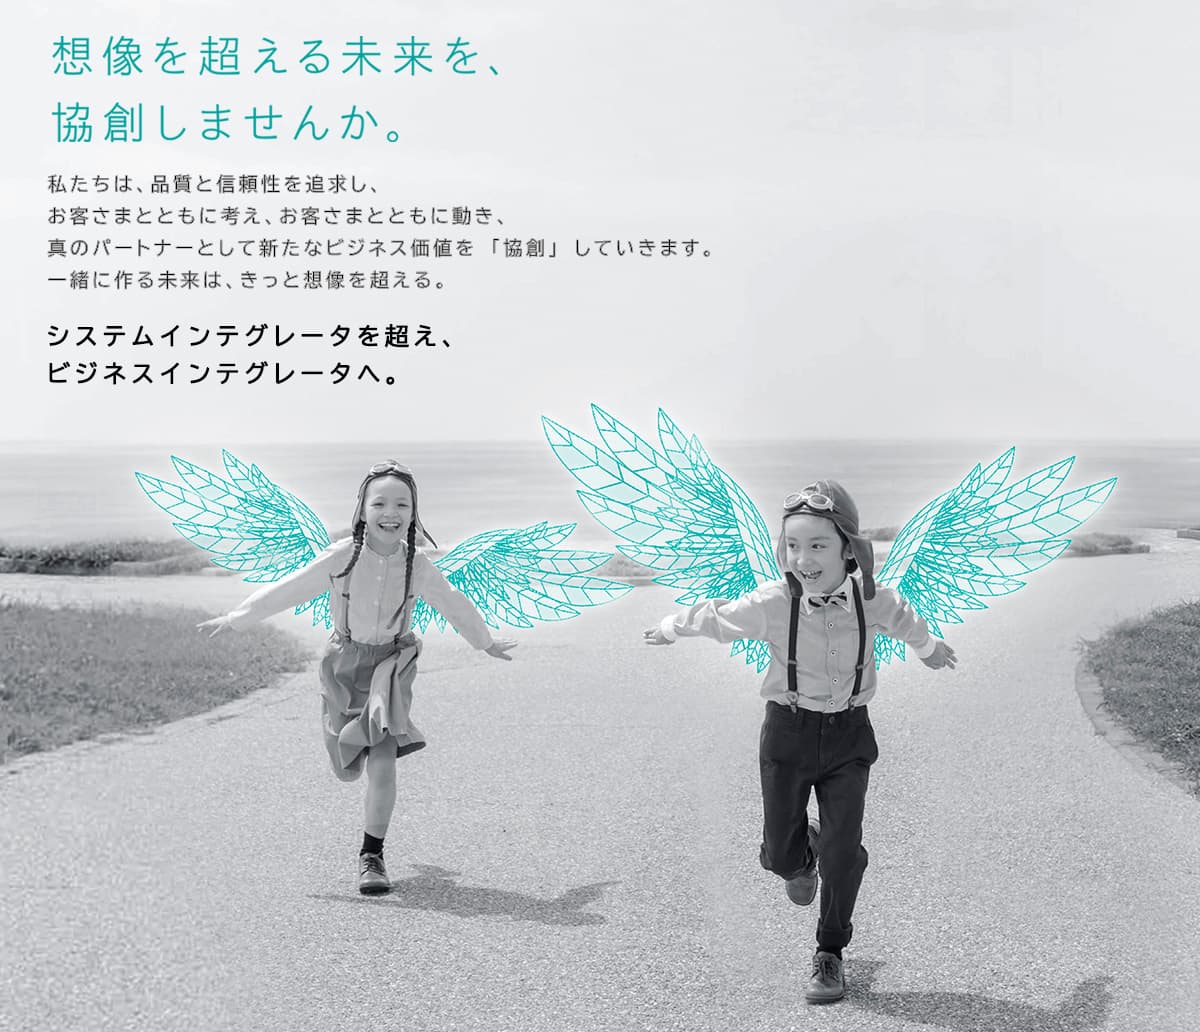 NTTコムウェアの企業メッセージポスター。天使の羽を生やした子供二人が海辺付近で手を広げて楽しそうに走っている様子の未来をイメージさせる画像。画像上に以下の文字「想像を超える未来を協創しませんか。」私たちは、品質と信頼性を追求し、お客さまとともに考え、お客さまとともに動き、真のパートナーとして新たなビジネス価値を「協創」していきます。一緒に作る未来は、きっと想像を超える。システムインテグレータを超え、ビジネスインテグレータへ。